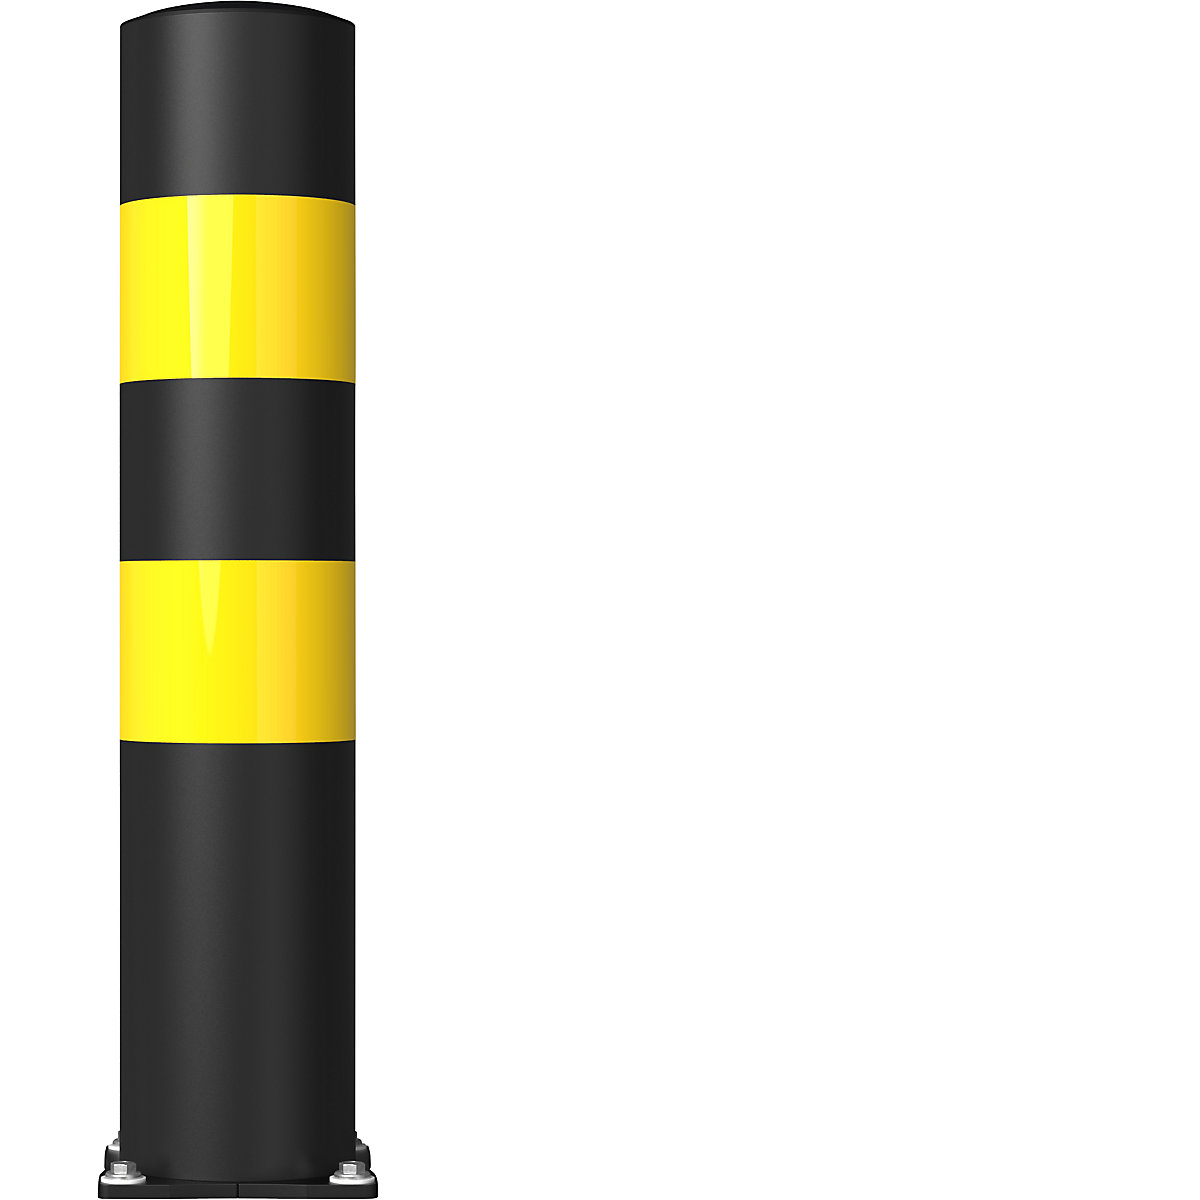 FLEX IMPACT Ütközésvédő terelőoszlop, Ø 200 mm, magasság 1000 mm, fekete, 2 fényvisszaverő csík, horganyzott talplemez